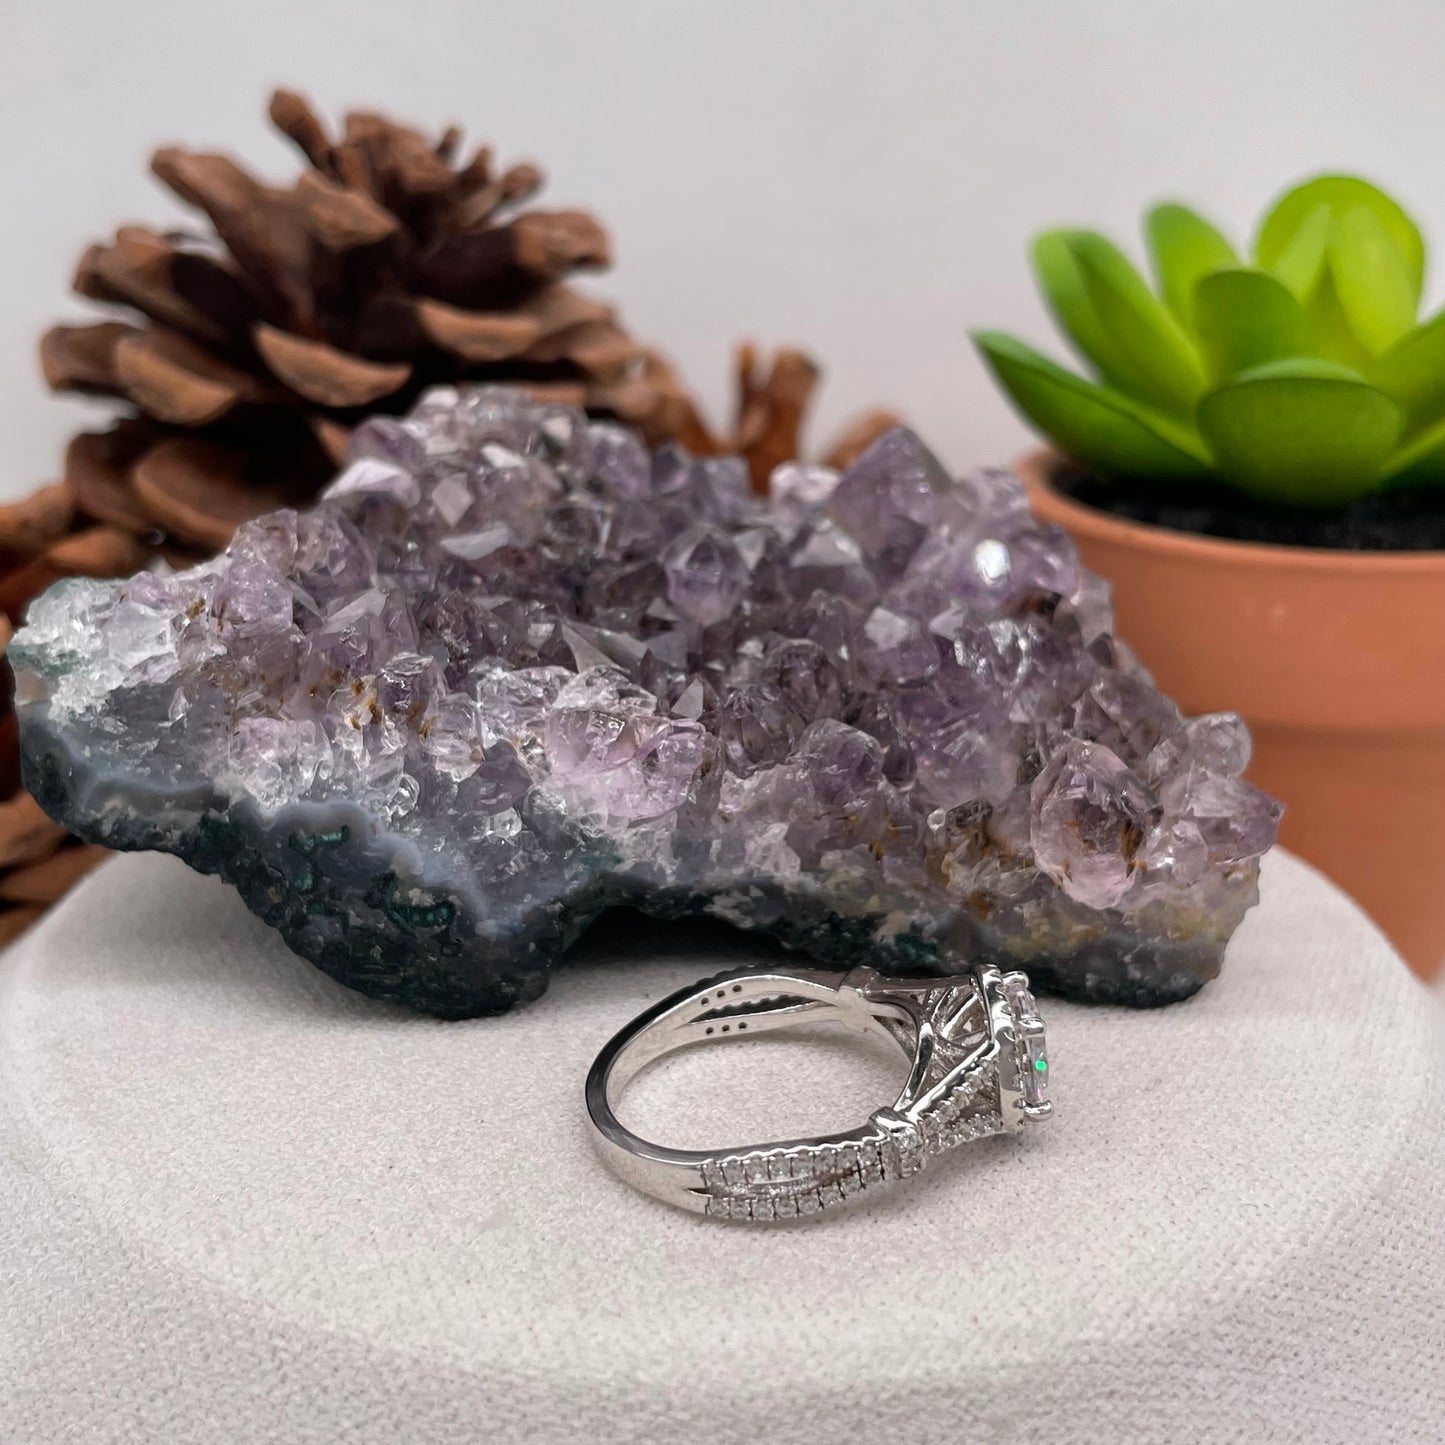 1.32 Carat Round Brilliant Lab Created / Naturel Diamond Engagement Ring